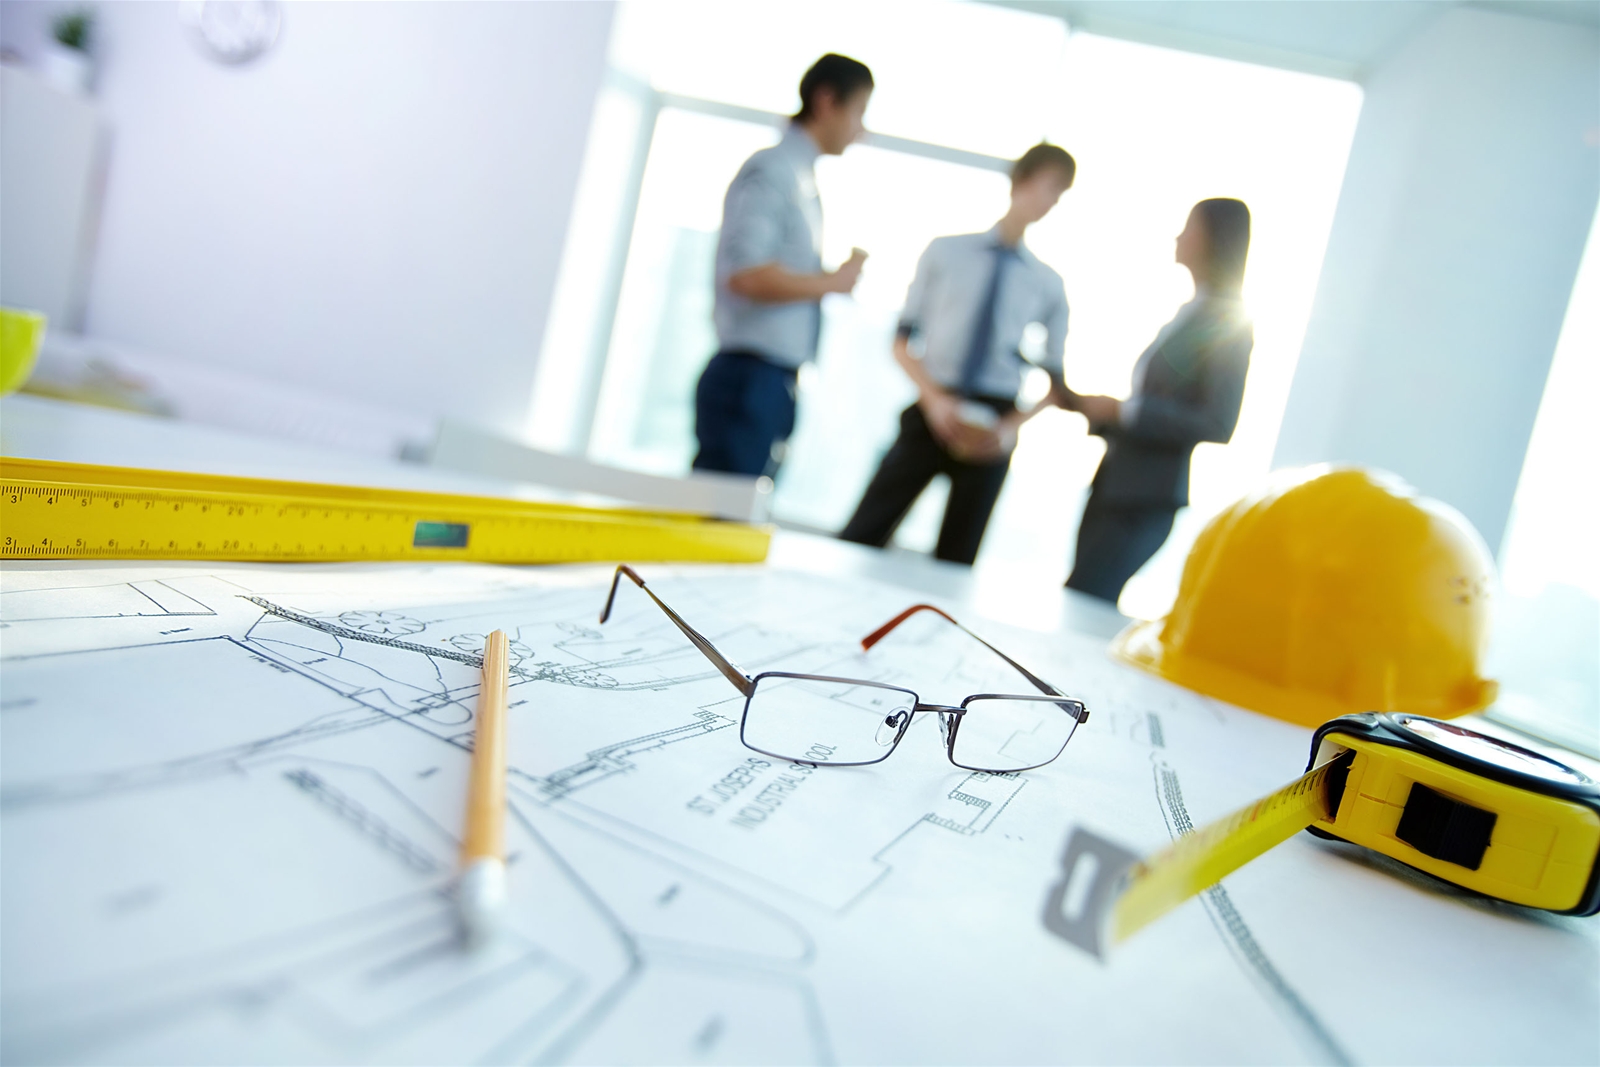 Các yếu tố cần xem xét trong quy định về sửa chữa cải tạo nhà đóng vai trò quan trọng trong việc lập kế hoạch và thực hiện dự án một cách thành công và hiệu quả